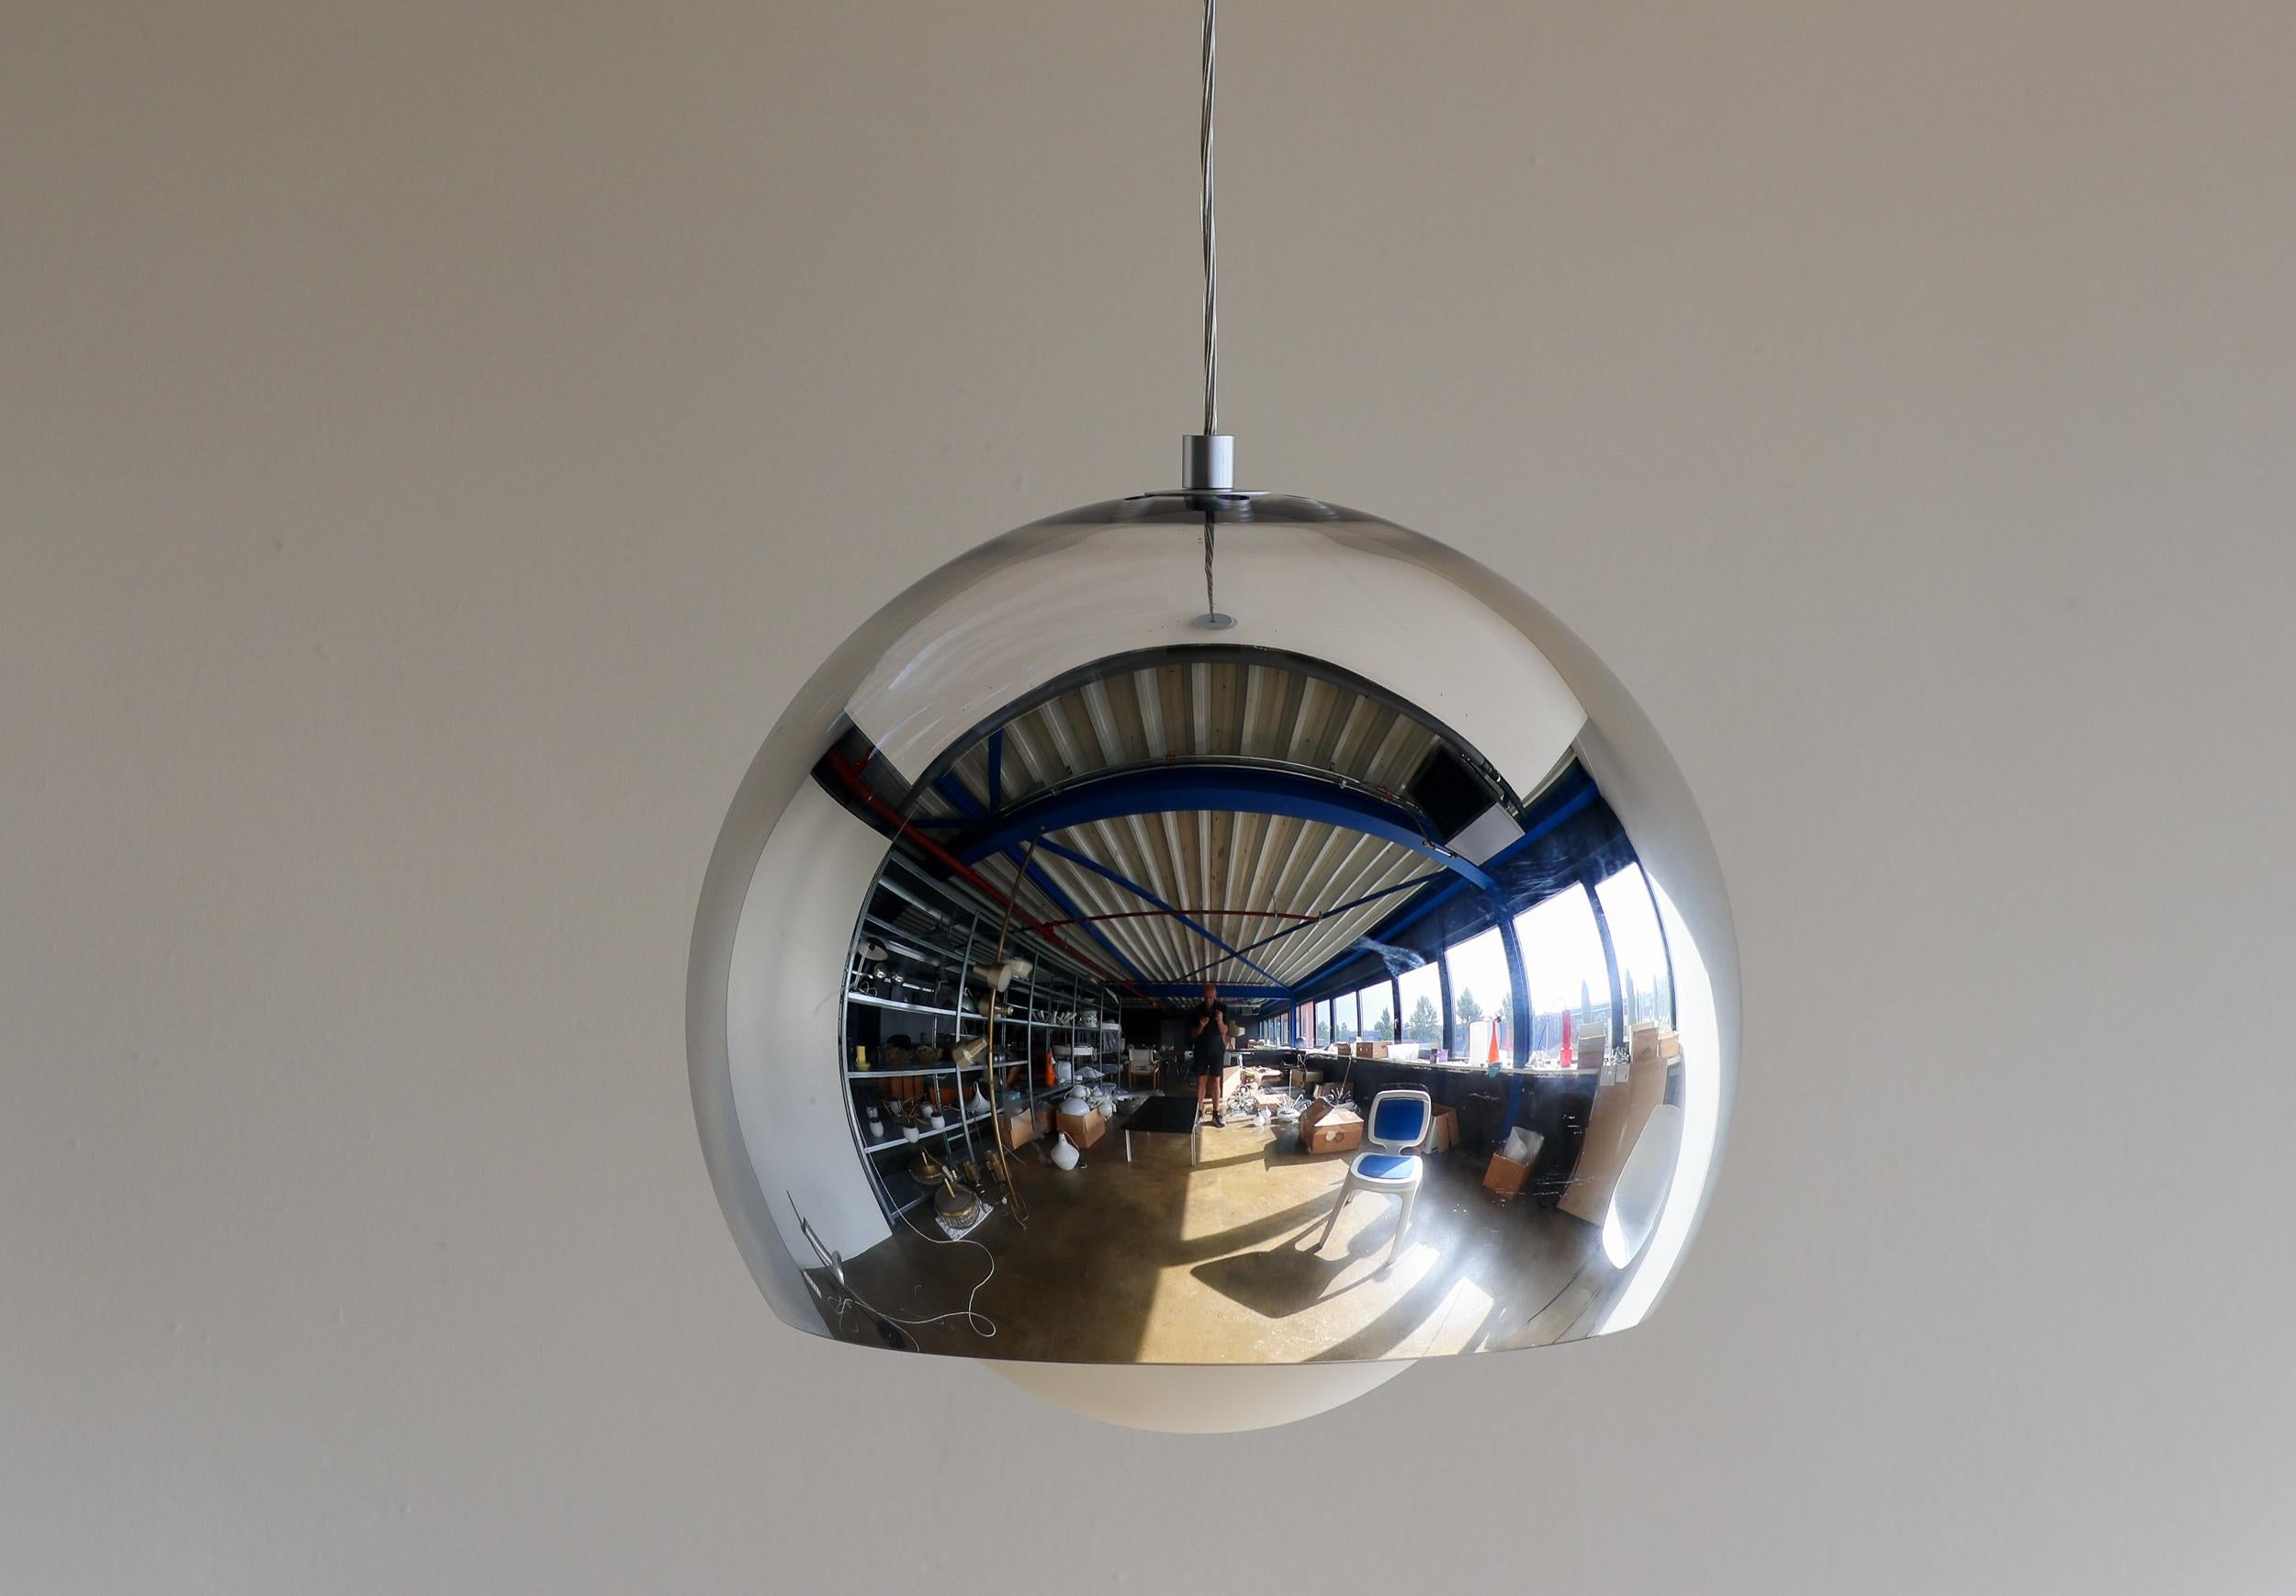 Große Pendelleuchte des italienischen Designers Matteo Thun für Zumtobel lightning. 
Die kugelförmigen Pendelleuchten sorgen durch ihren teiltransparenten Leuchtenkörper mit reflektierender Chrombeschichtung und opaler Glaskugel im Inneren für eine